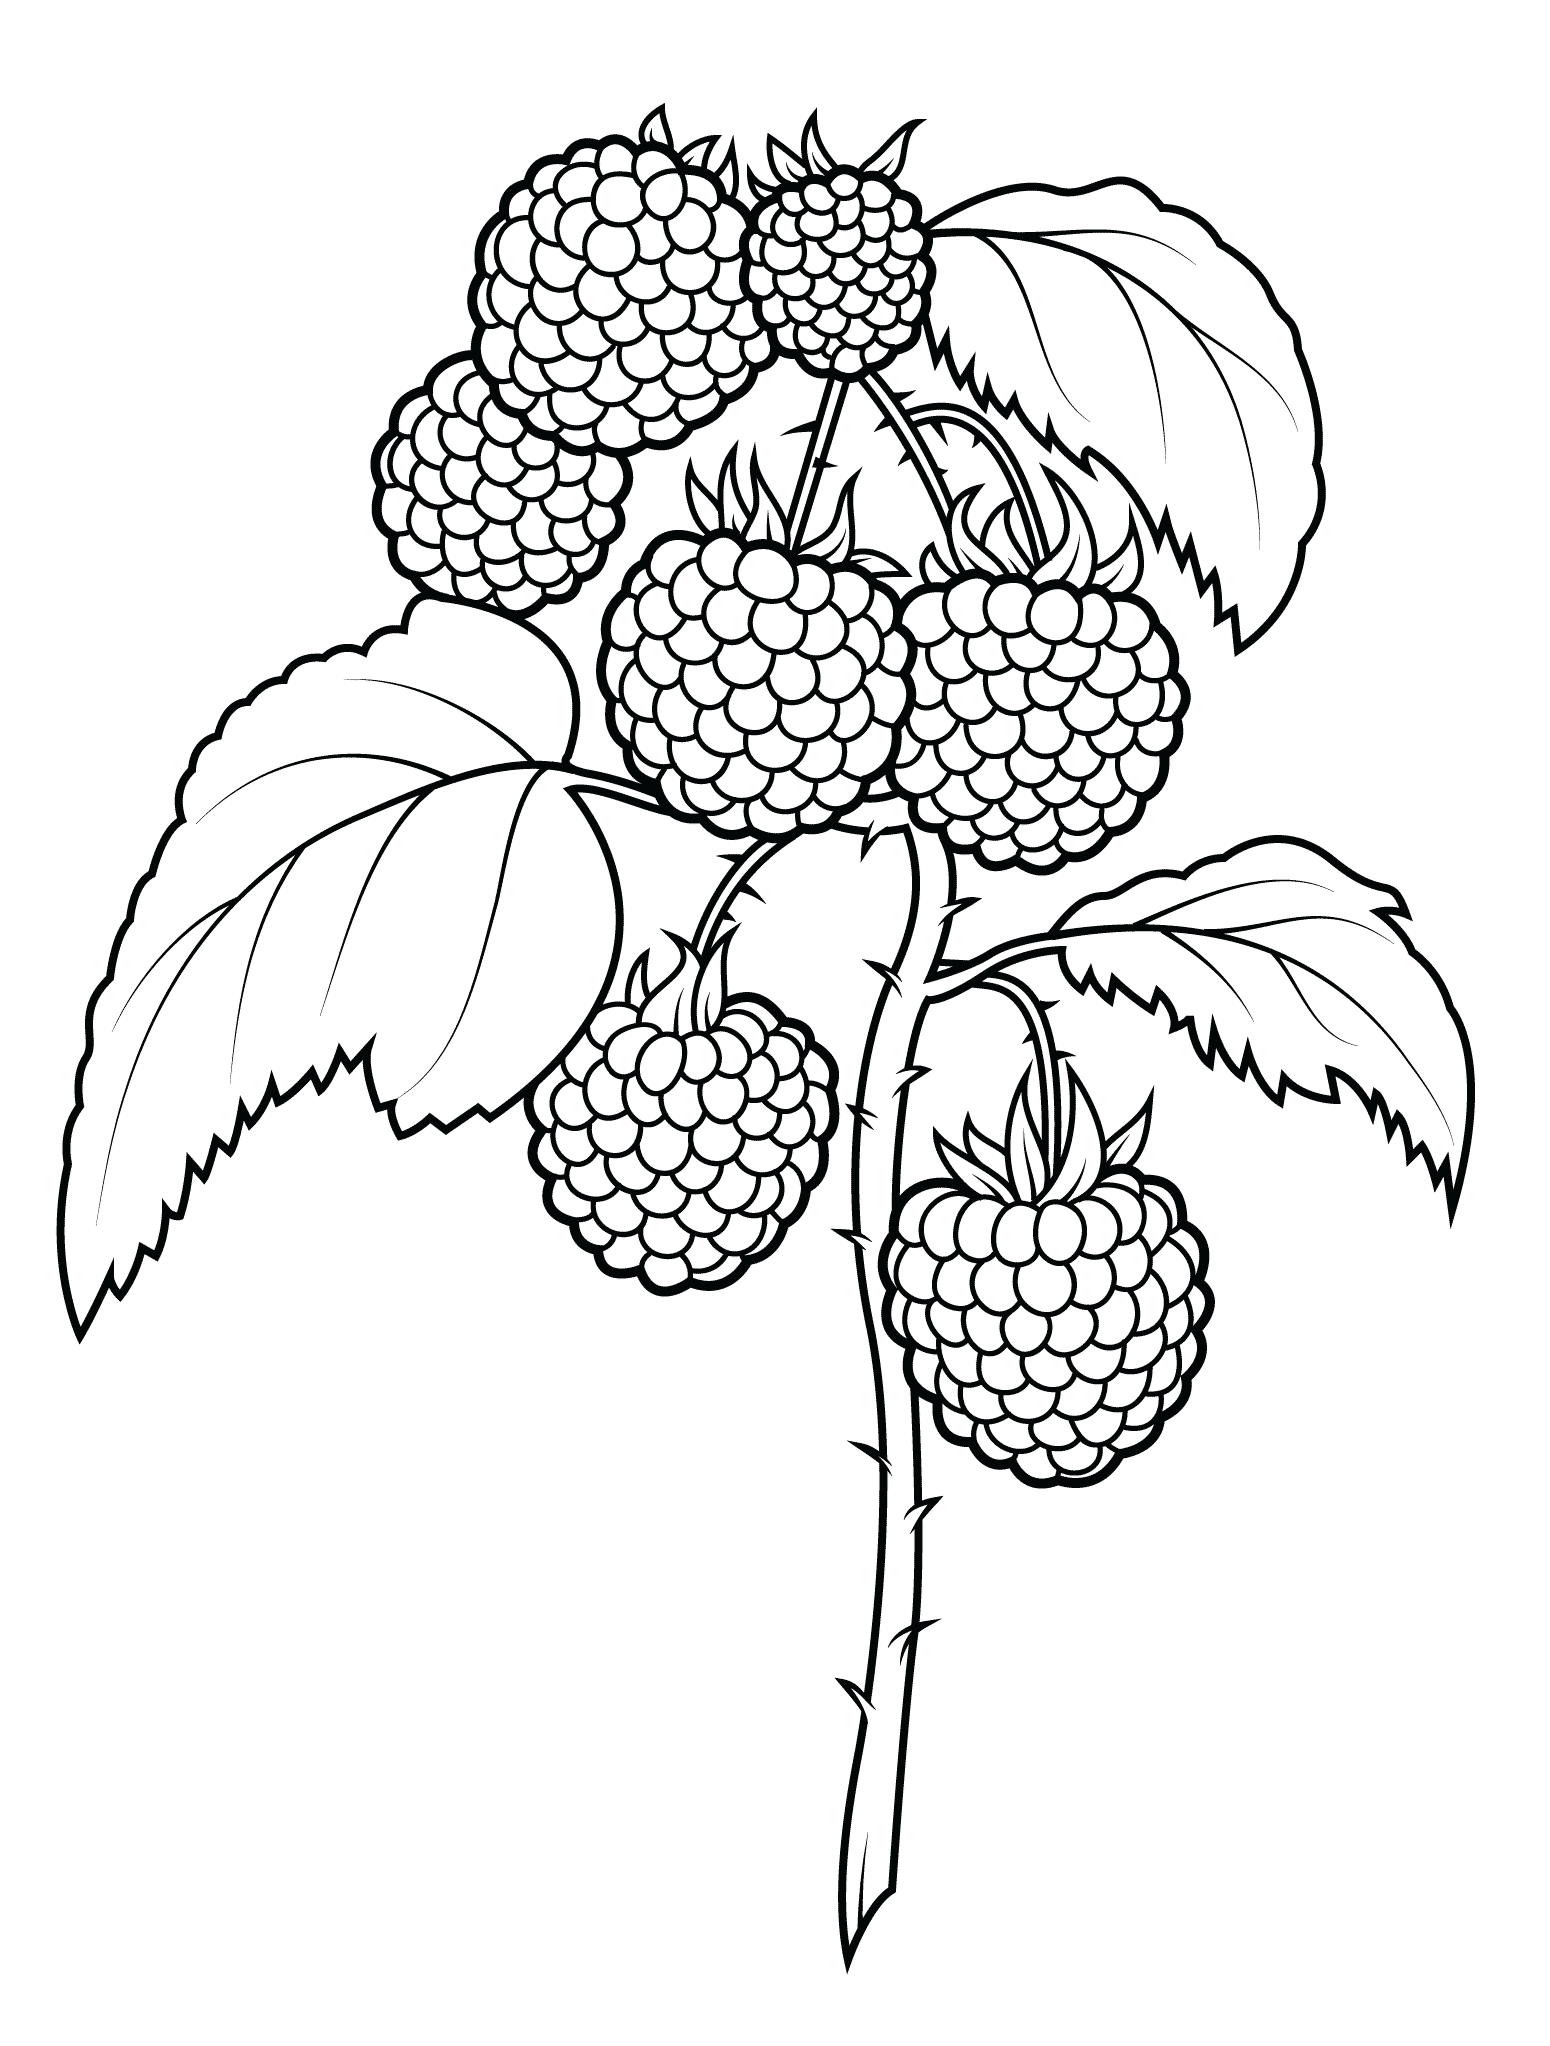 树莓的简单画法